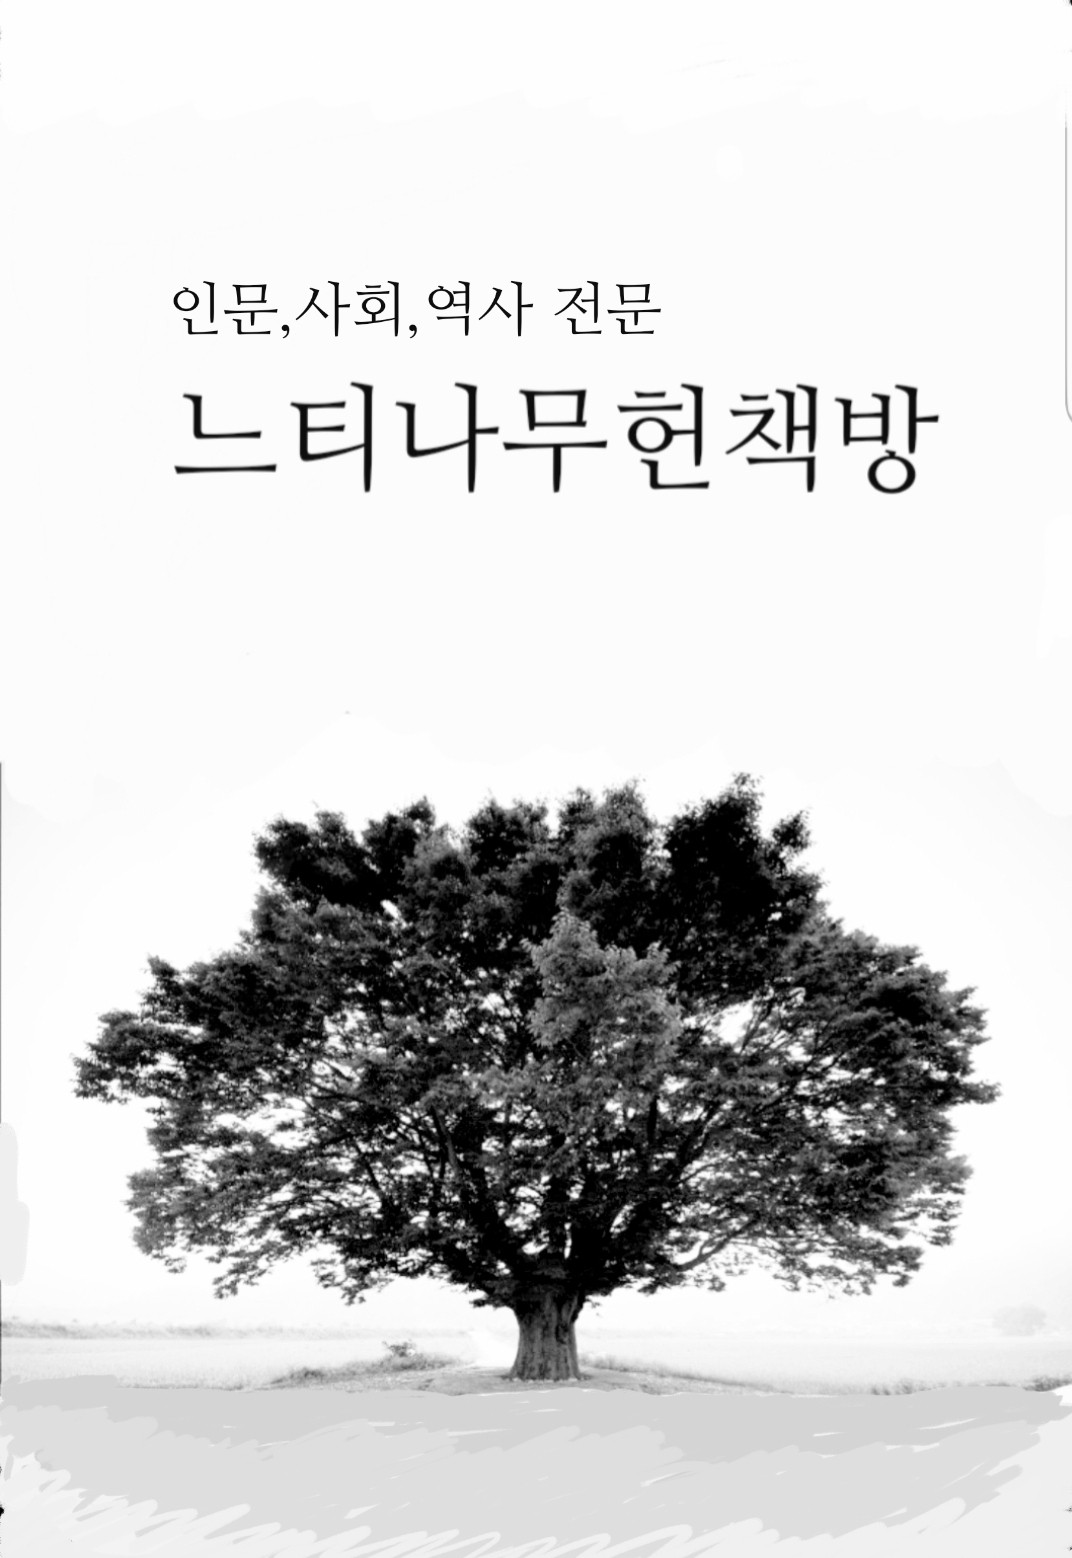 범씨 천년도읍지 새만금땅 - 김철규 새만금인생 30년 기록 (알인27코너)